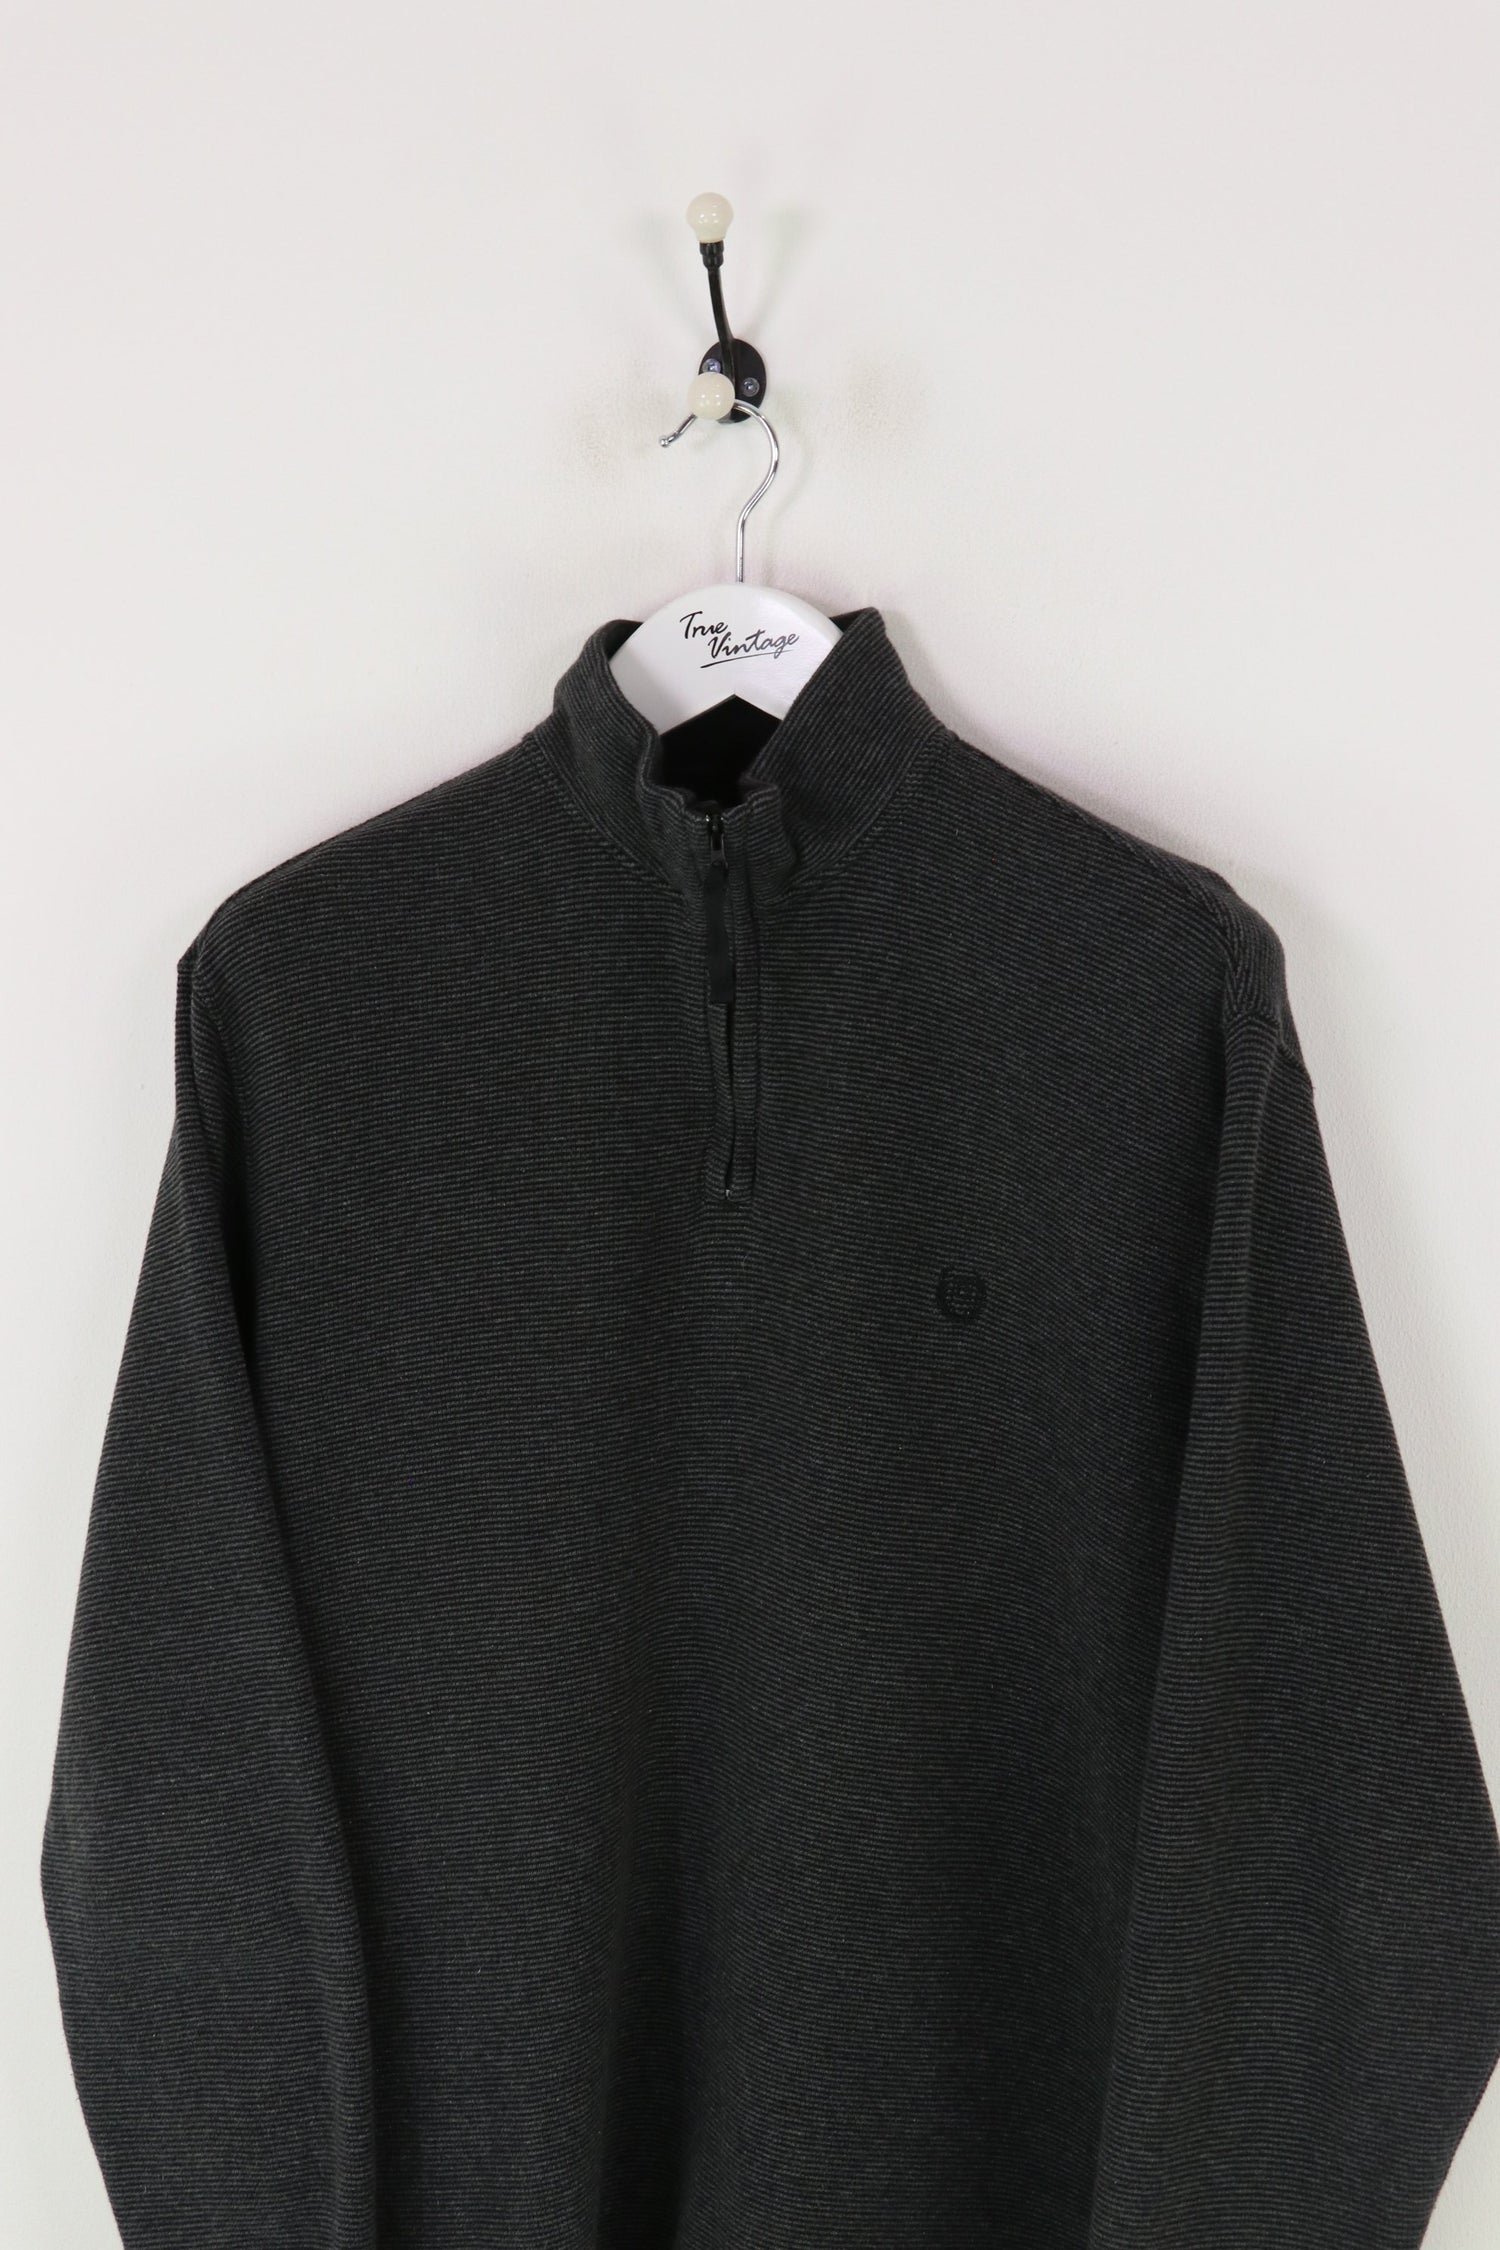 Ralph Lauren Chaps 1/4 Zip Sweatshirt Dark Grey XL